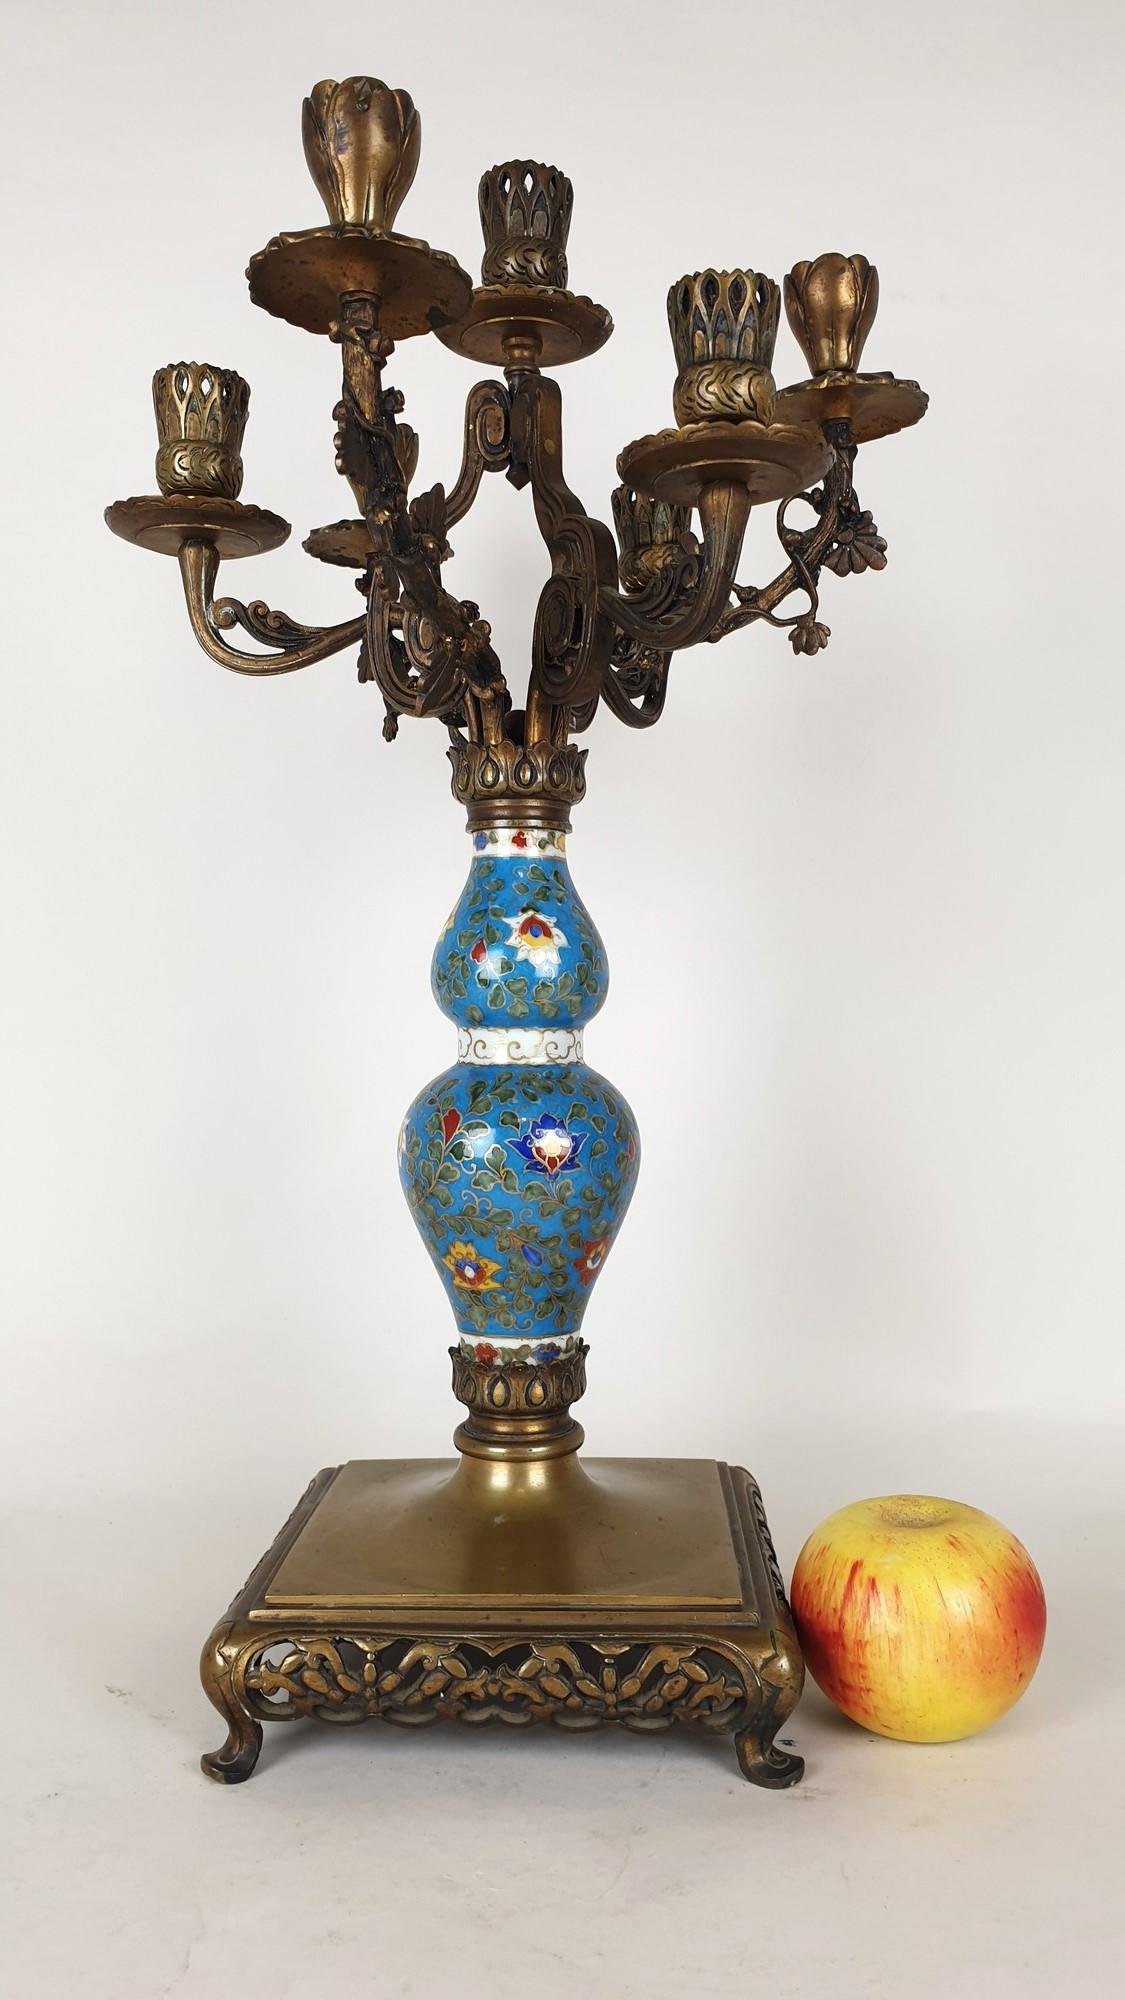 Candélabre en porcelaine peinte à décor de fleurs, avec une base et un bouquet de 7 lumières, en bronze à patine brune, dans le style japonais ou Escalier de Cristal

Bon état général, usure normale

19ème siècle

Hauteur 50cm
Diamètre